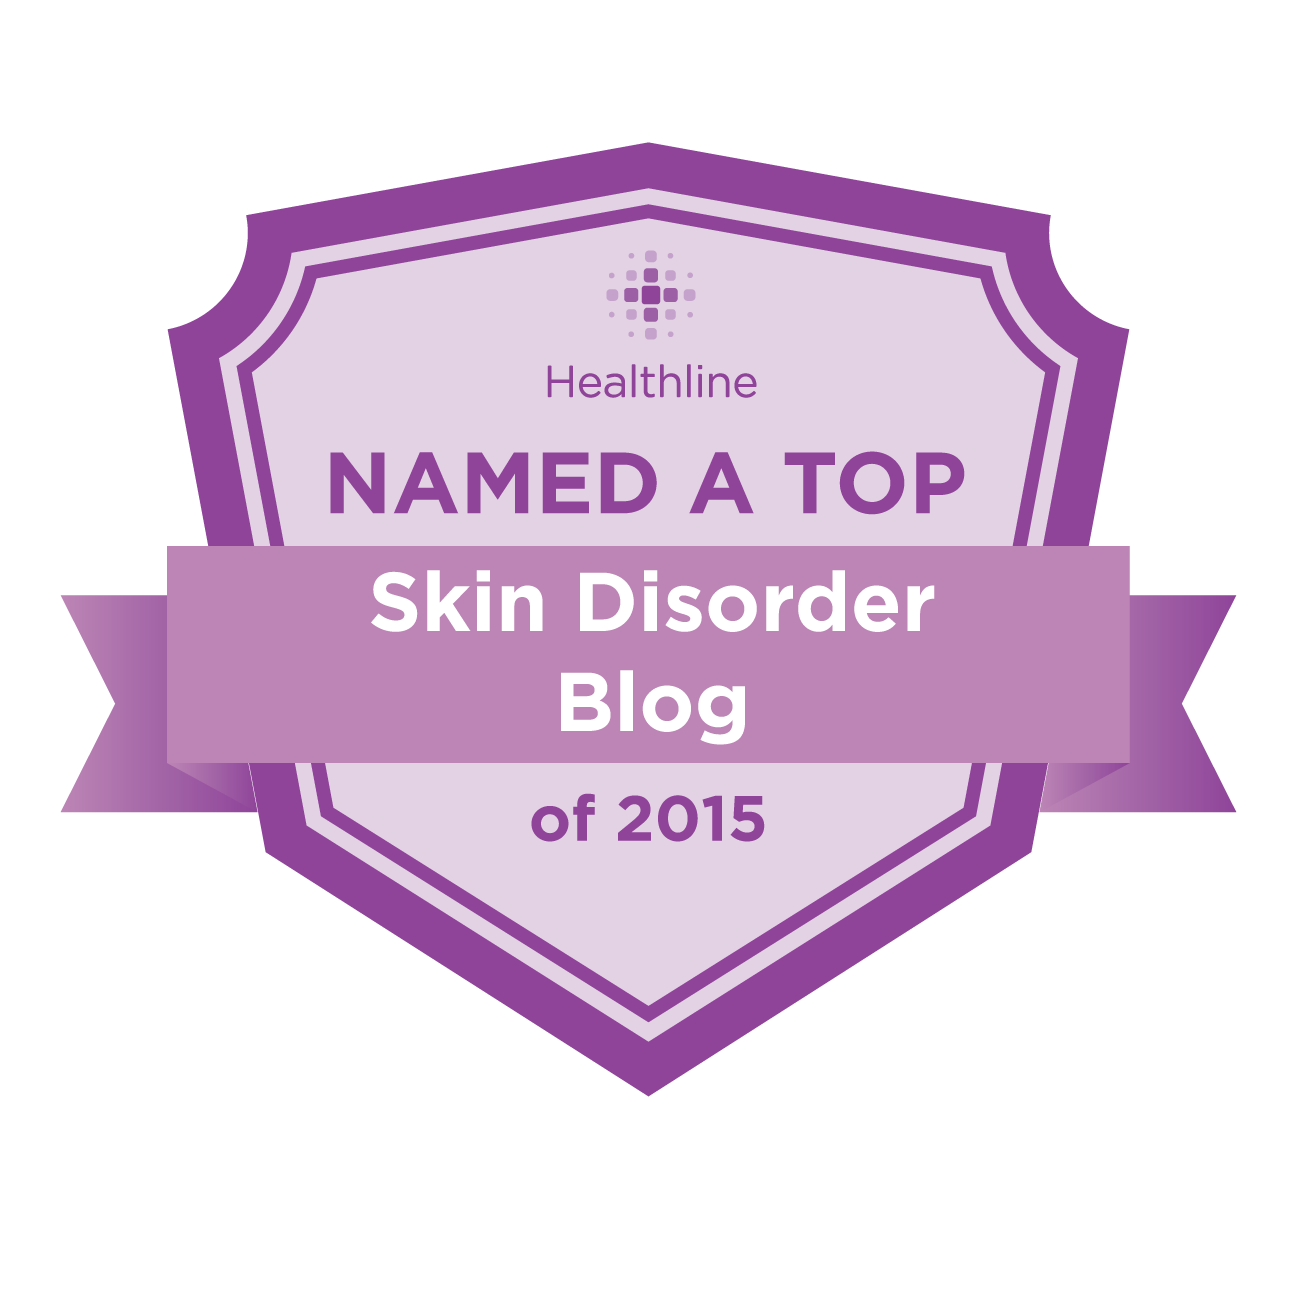 skin disorder best blogs badge